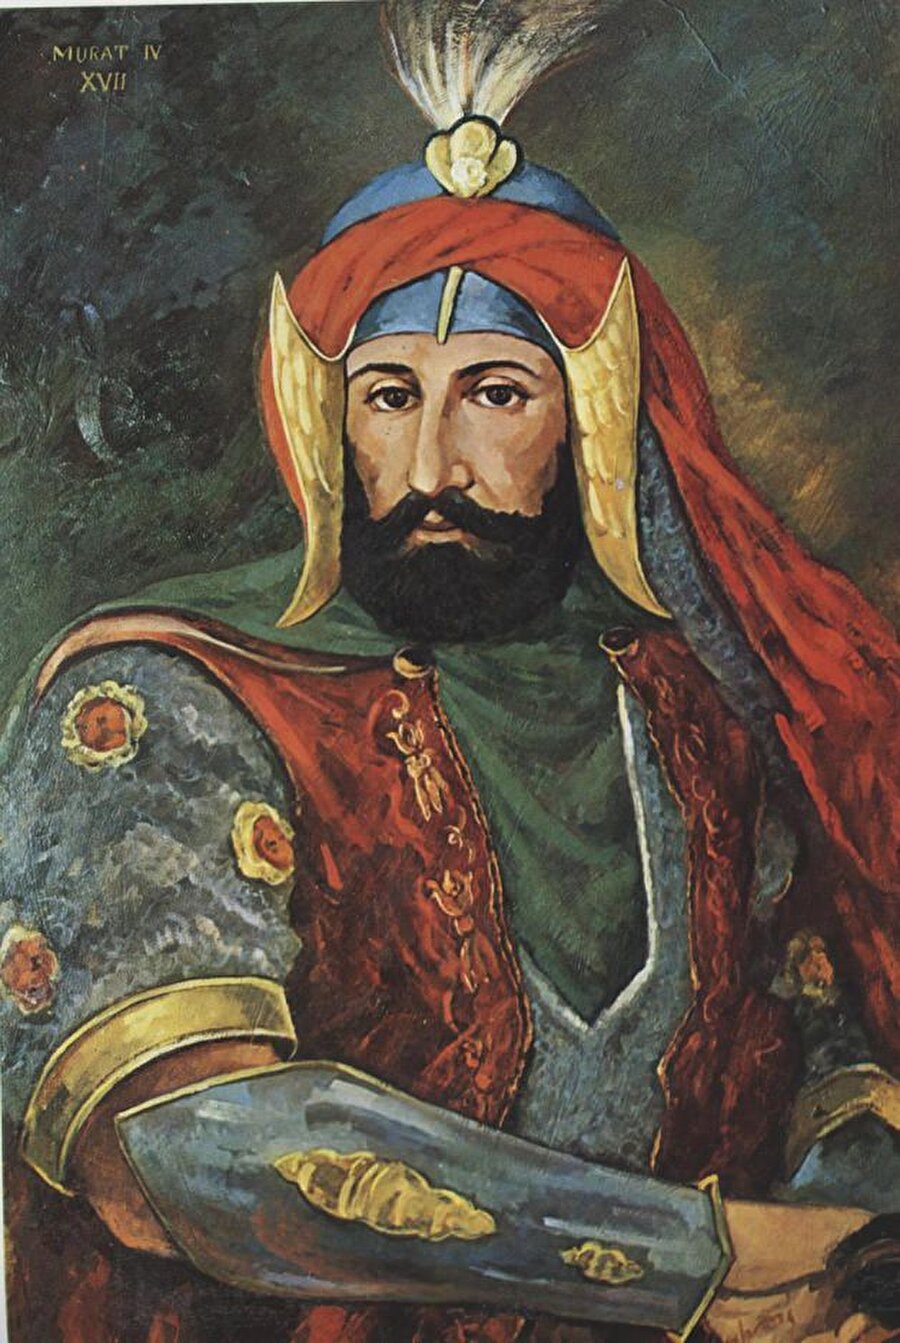 Sultan IV. Murad

                                    
                                    
                                    "Allah, peygamber korkusu bilmez alçaklar! Unutmayın ki, intikam gecikir ama asla yaşlanmaz."
                                
                                
                                